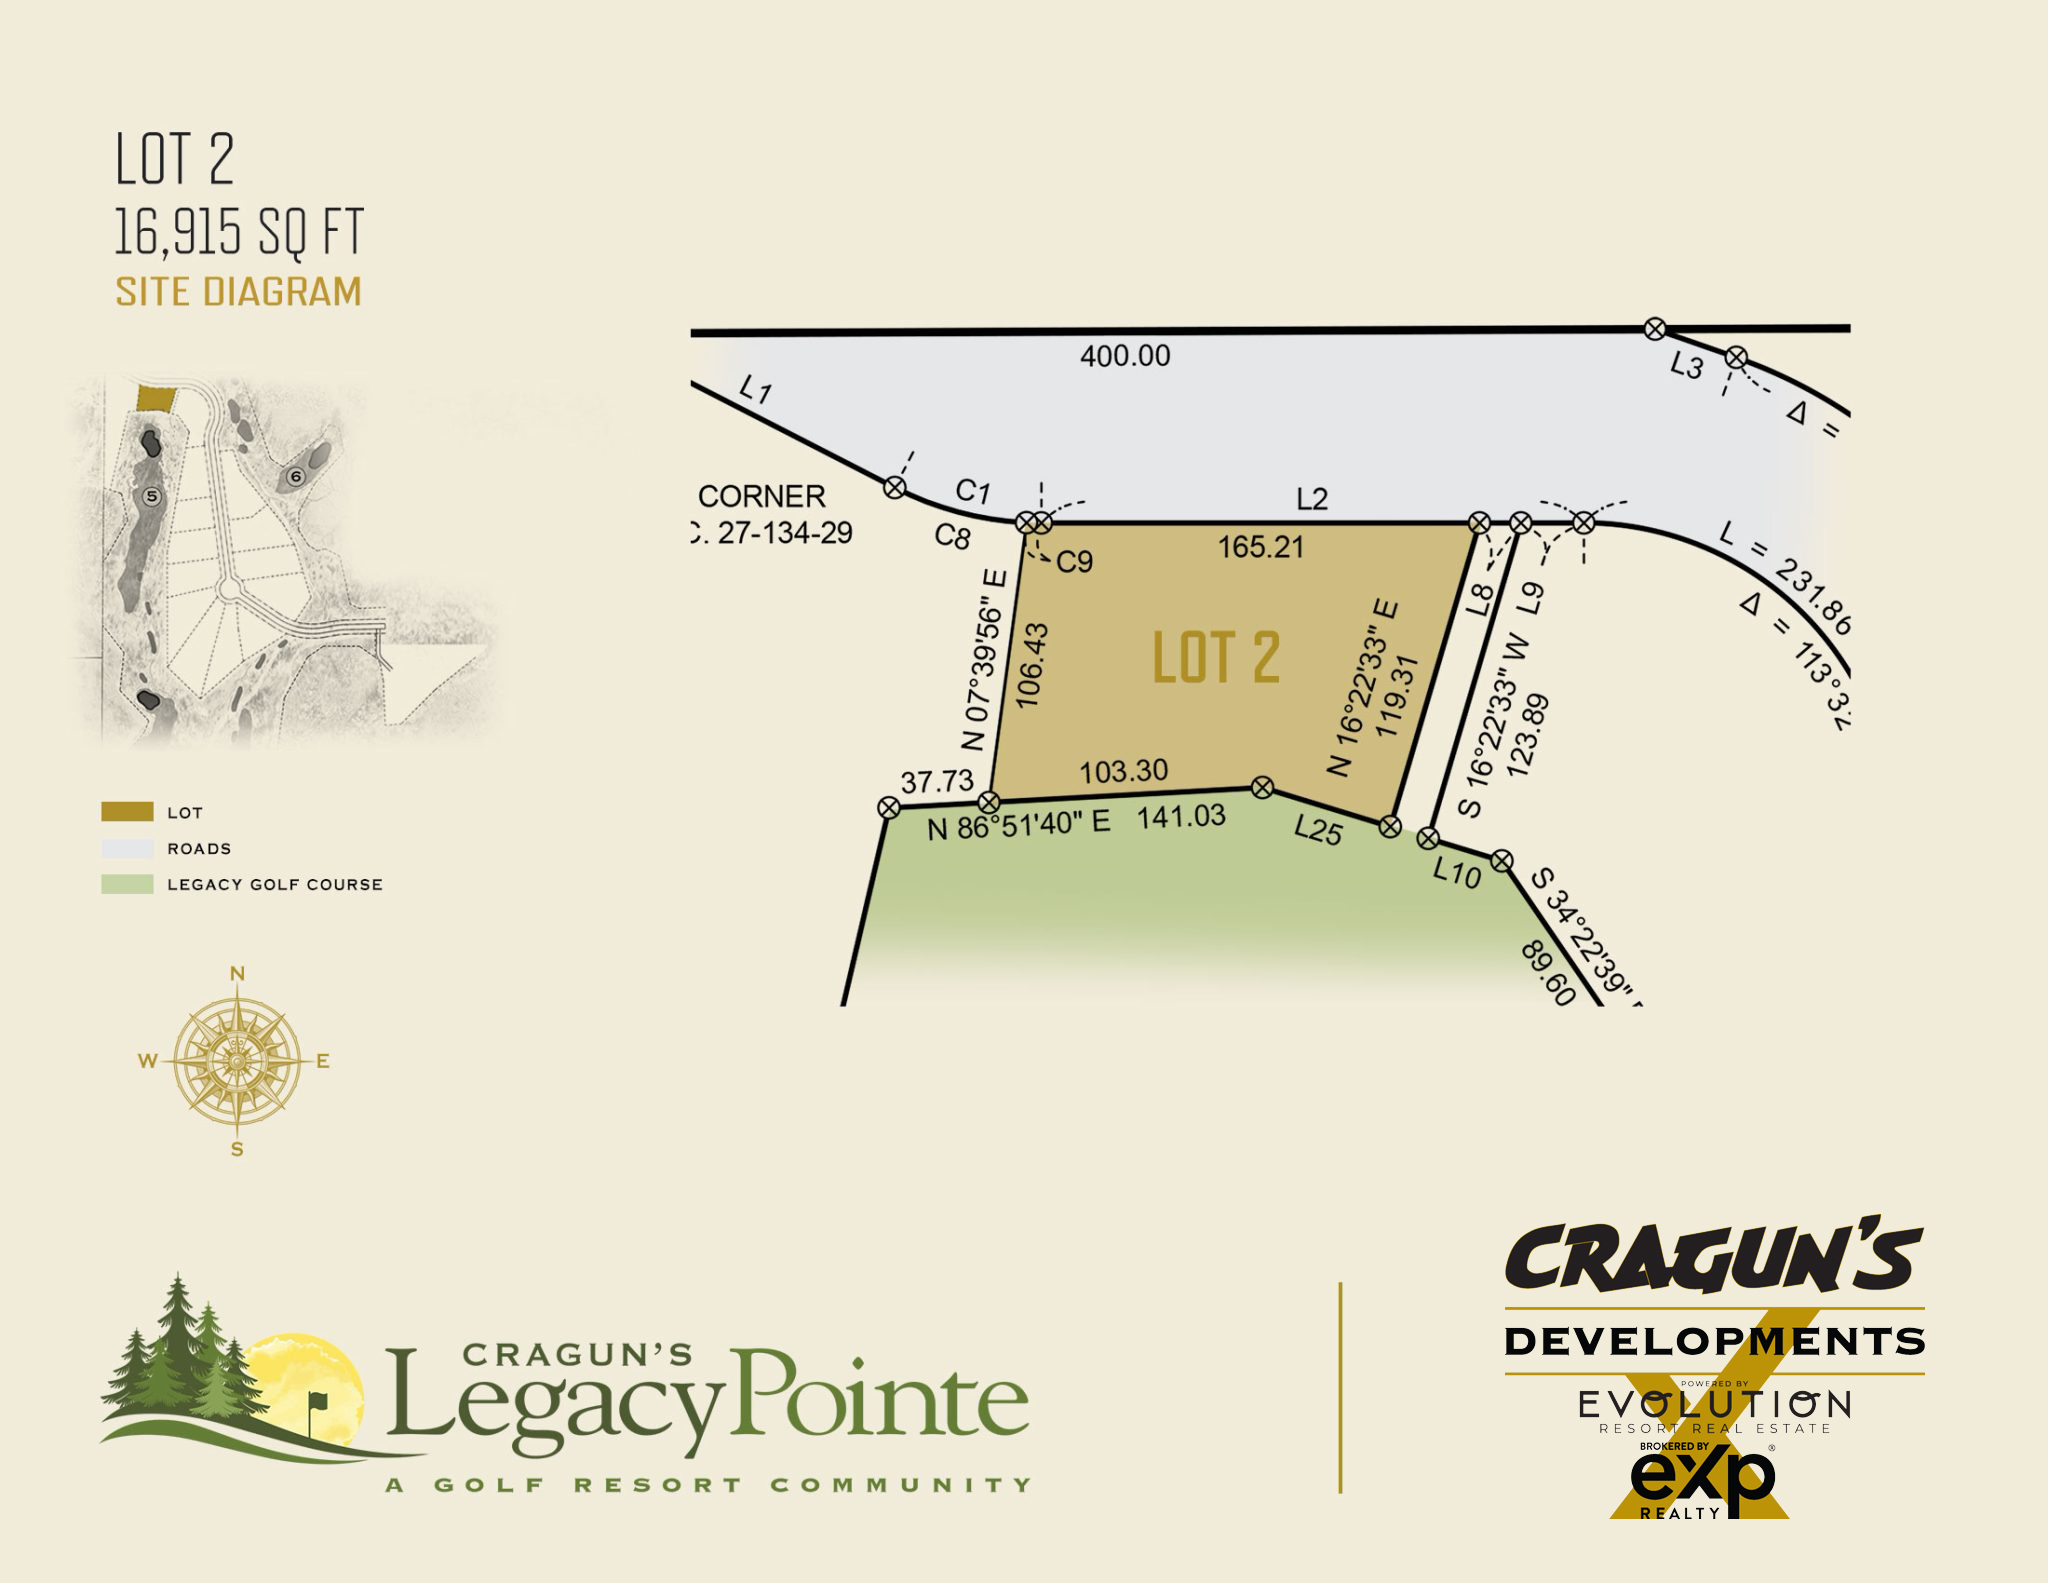 Legacy Pointe Lot 2 at Cragun's Developments in Brainerd, MN